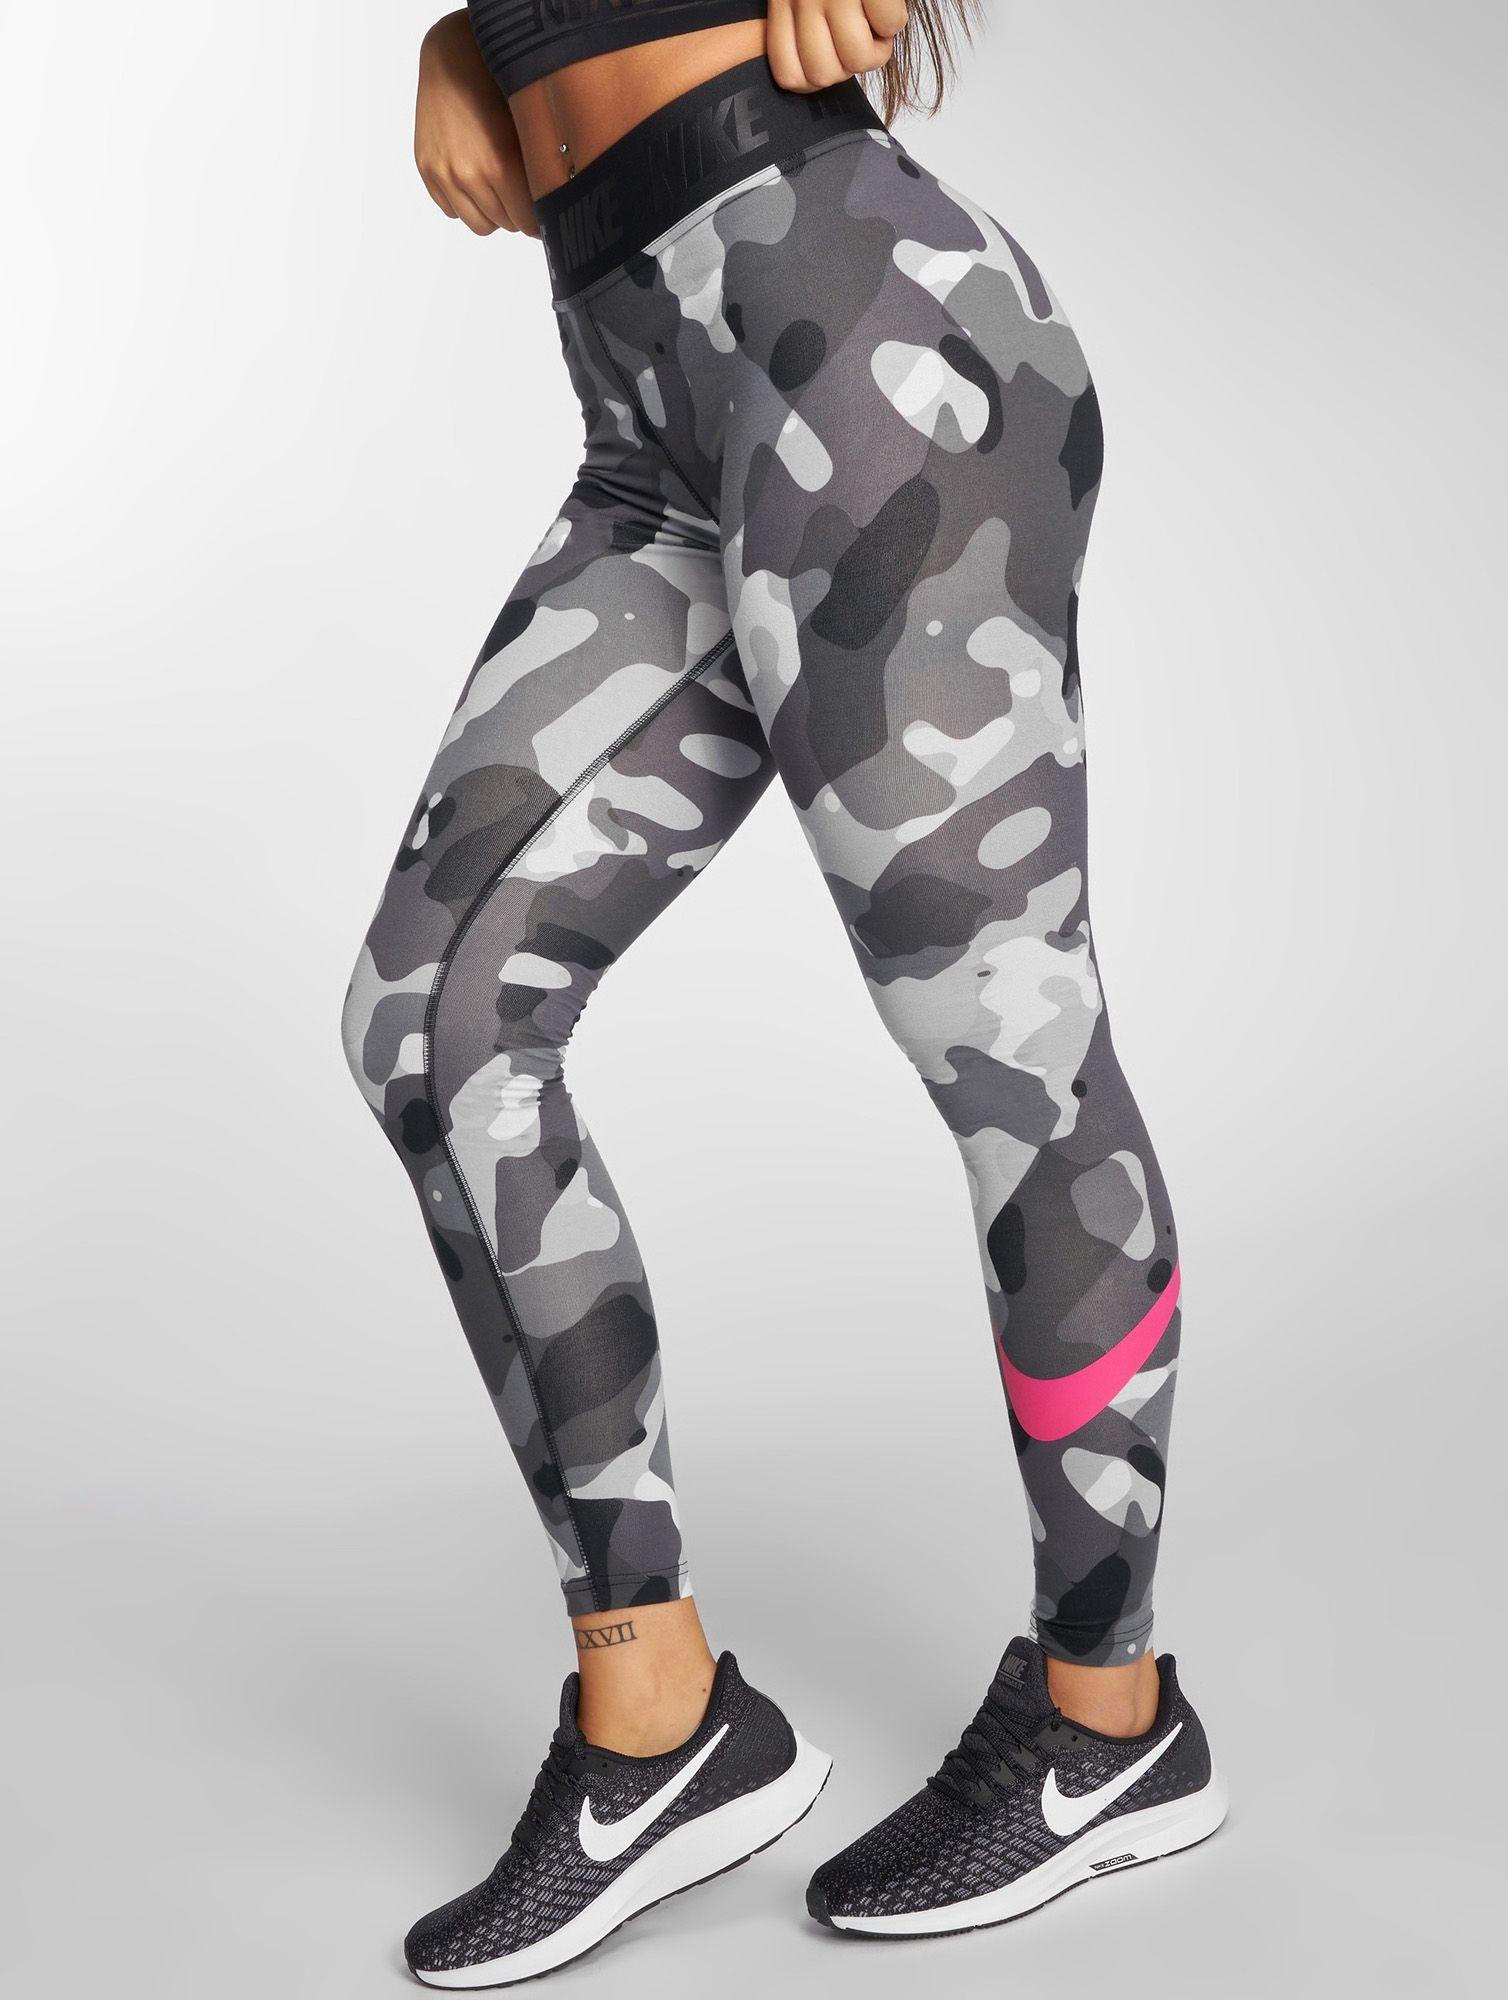 Camo Nike Logo - Nike Wmns Sportswear Swoosh Camo Leggings - Clothes Shorts ...